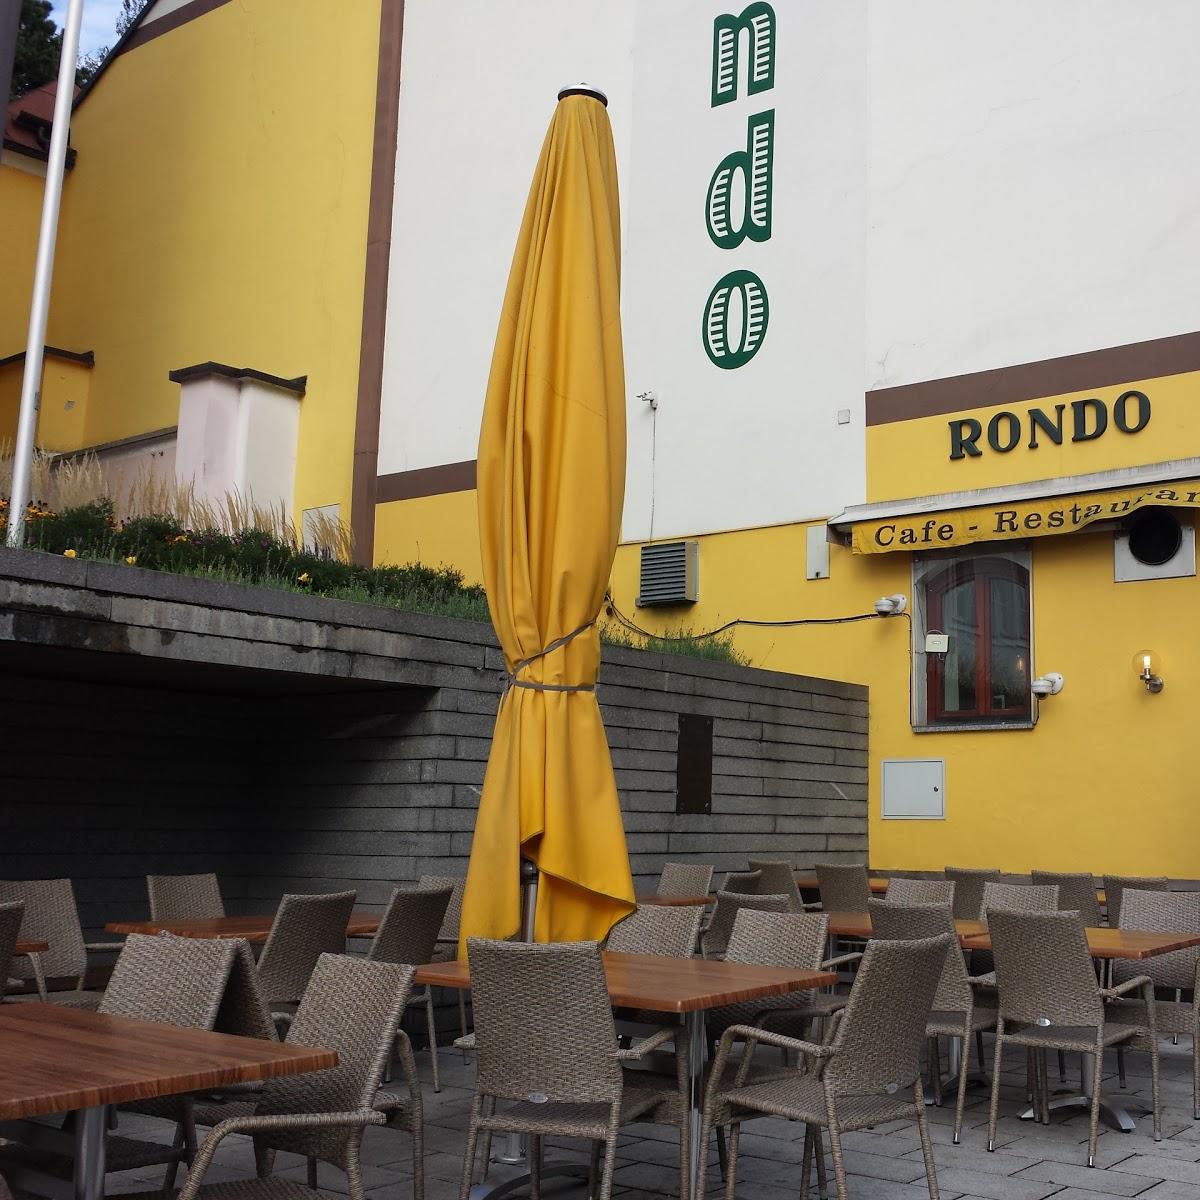 Restaurant "Cafe Rondo" in Grieskirchen